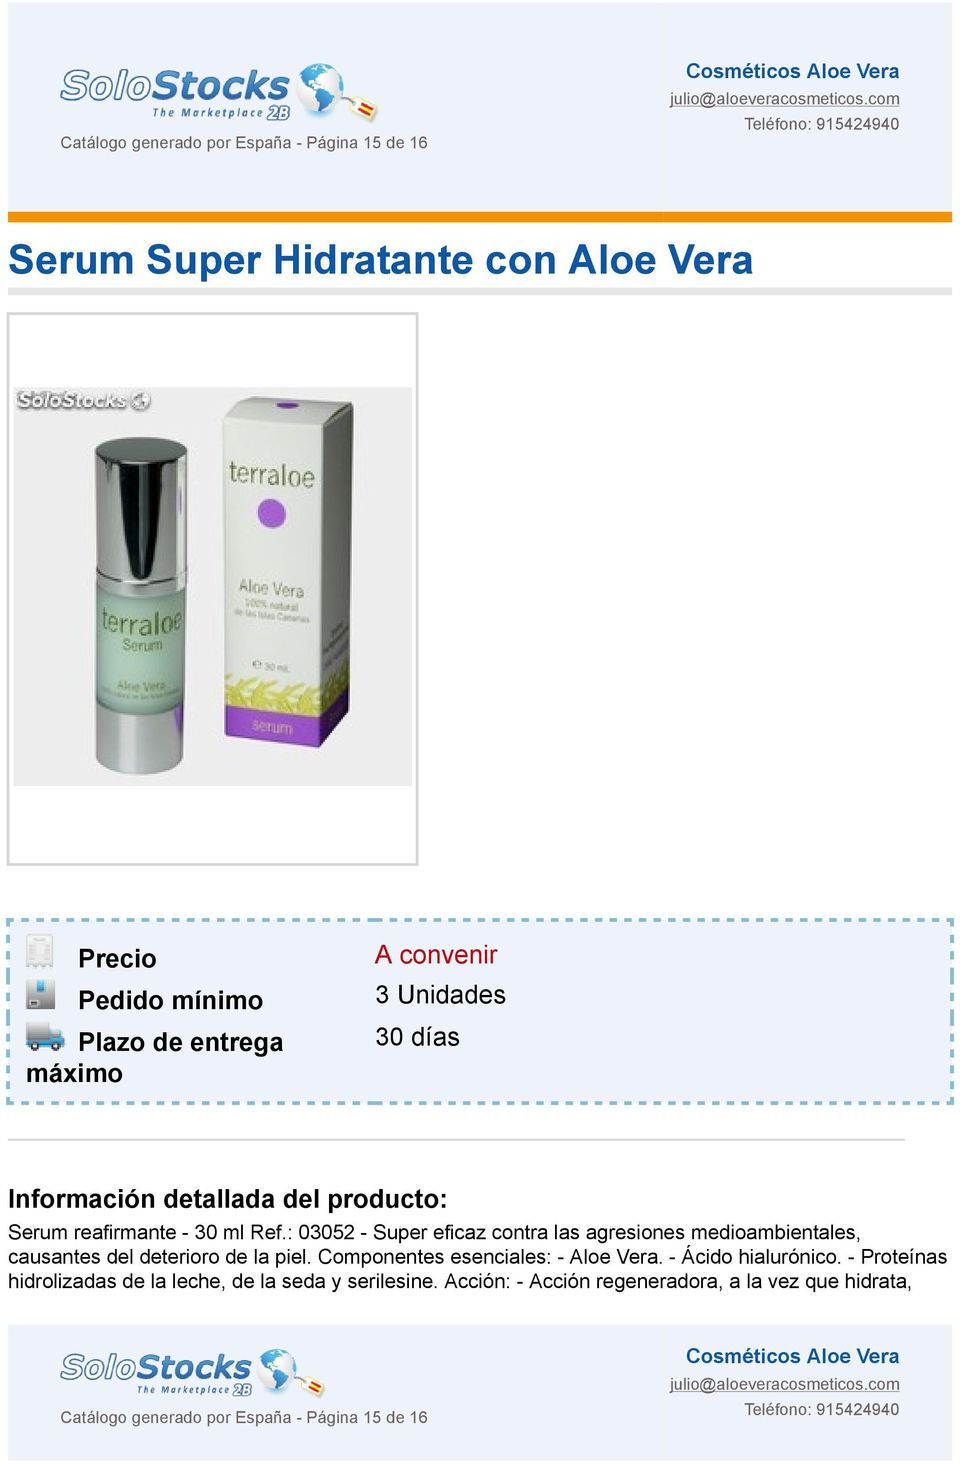 : 03052 - Super eficaz contra las agresiones medioambientales, causantes del deterioro de la piel. Componentes esenciales: - Aloe Vera.